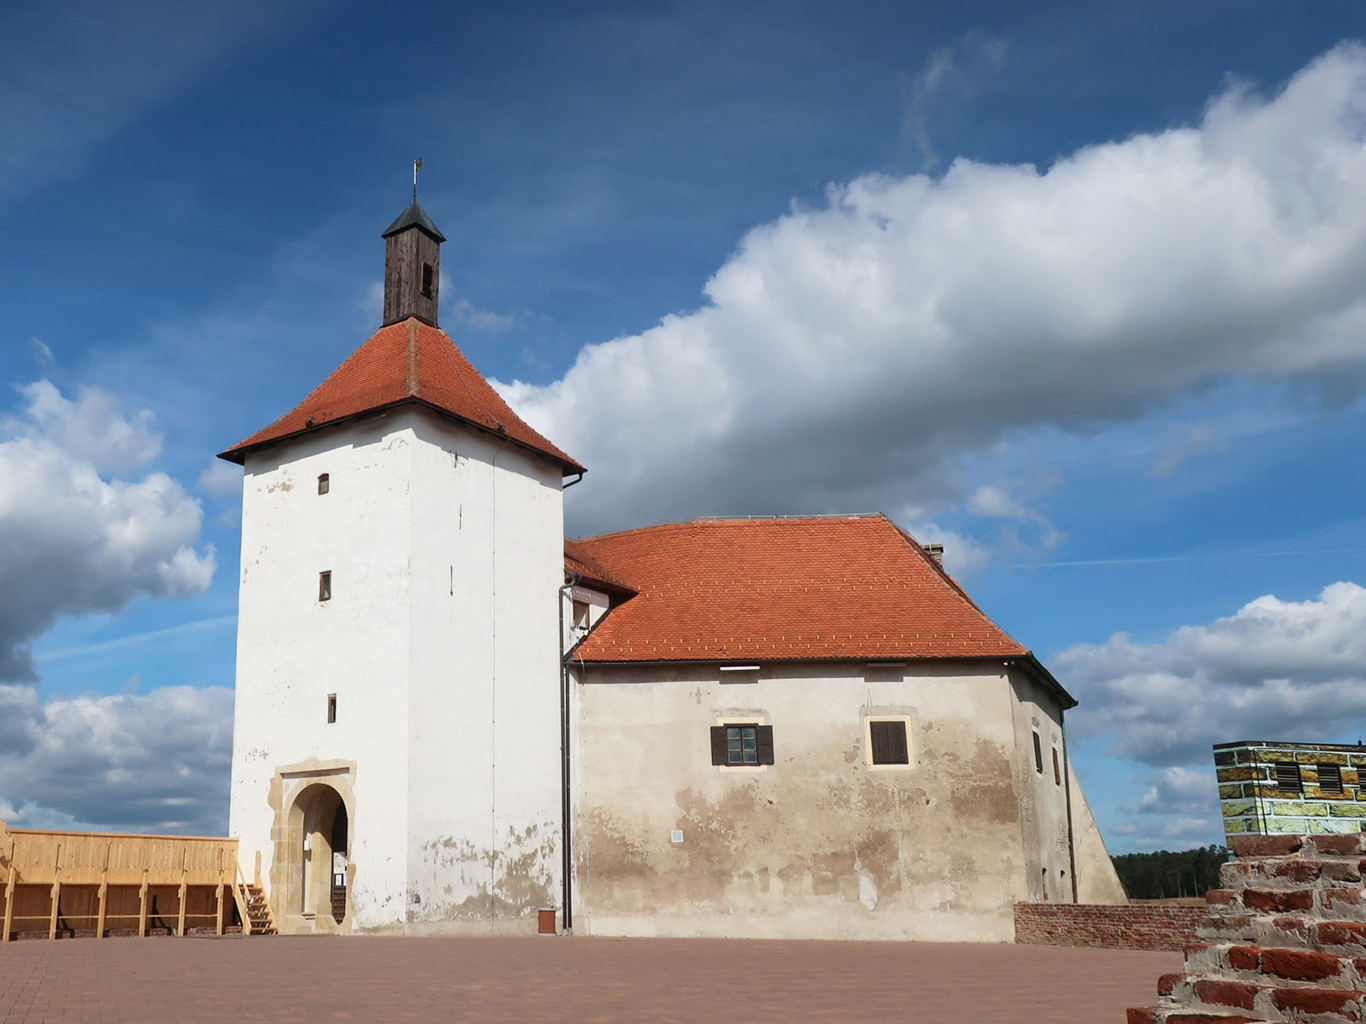 Středověká pevnost v Đurđevci nebyla nikdy dobyta